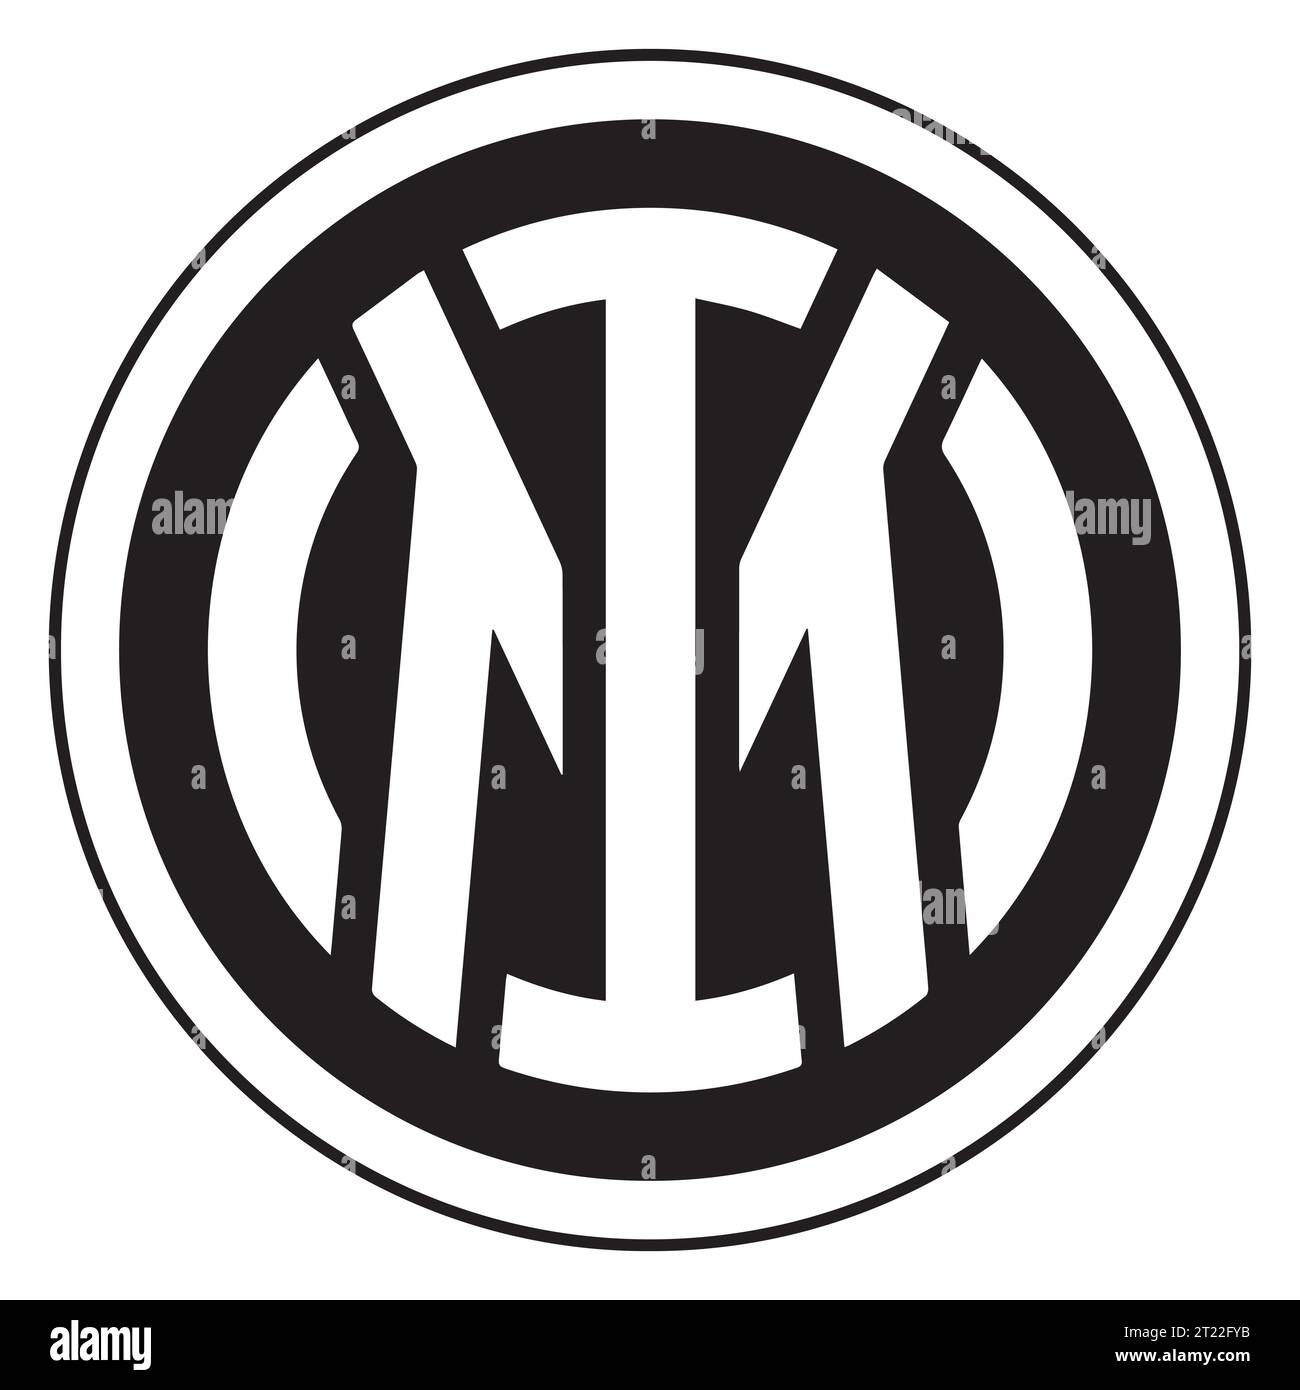 Inter Milan Logo bianco e nero club di calcio professionistico italiano, illustrazione vettoriale immagine astratta in bianco e nero modificabile Illustrazione Vettoriale